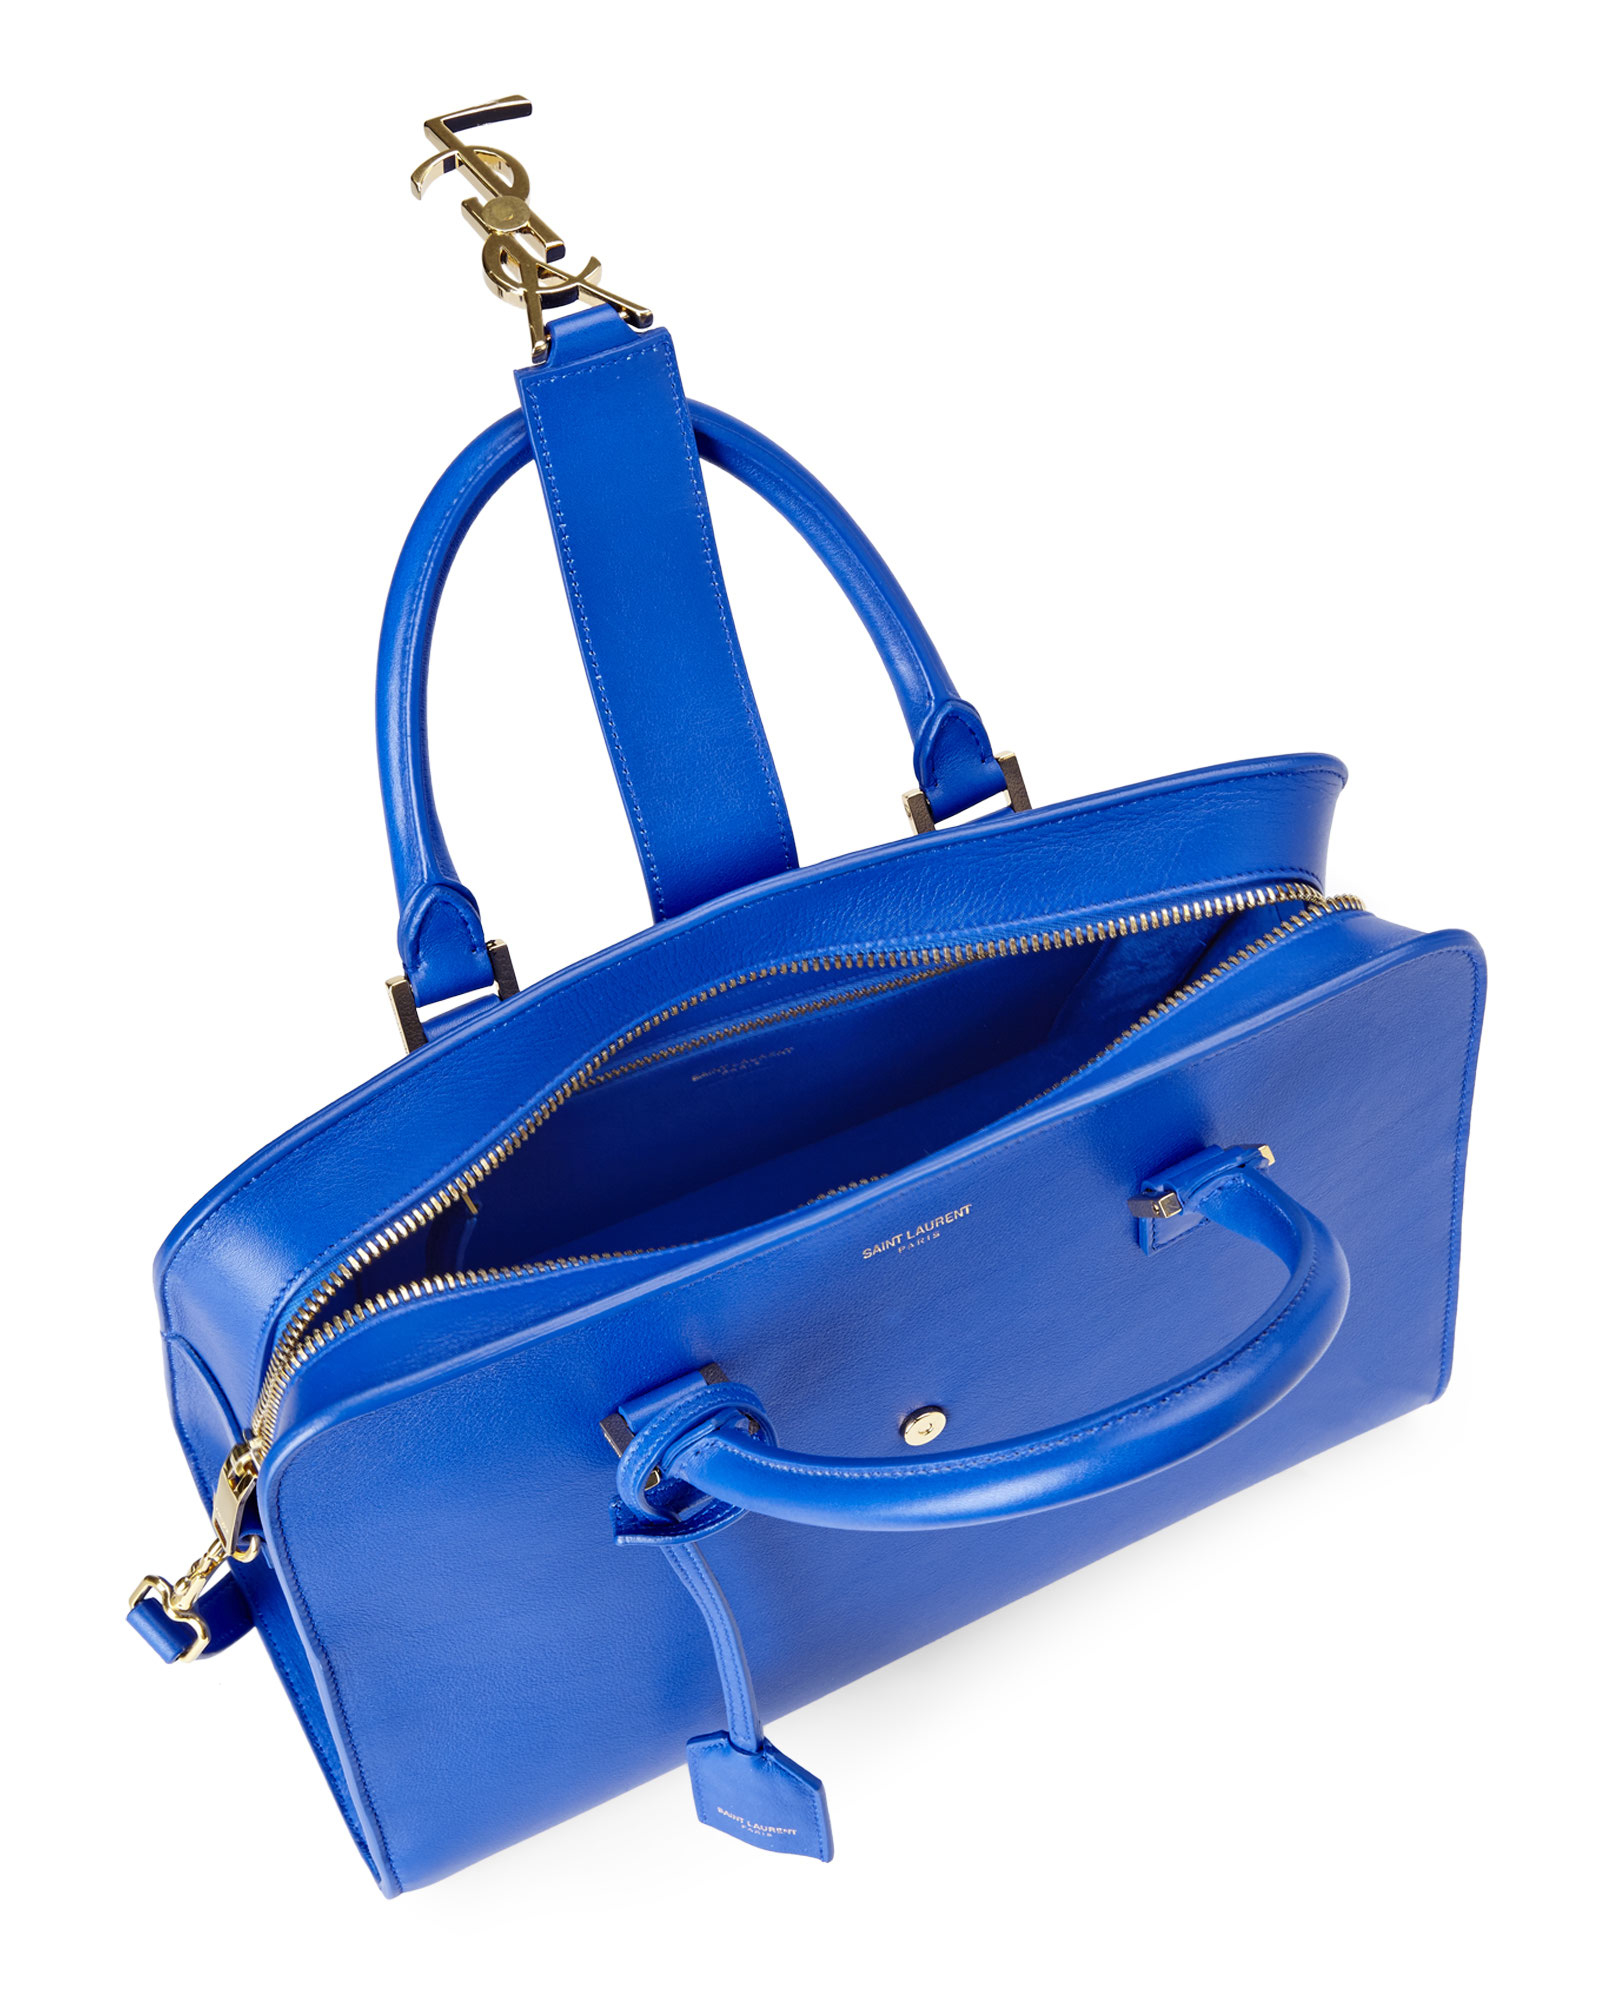 ysl purses sale - Saint laurent Bleu Majorelle Small Monogramme Box Laque Bag in ...